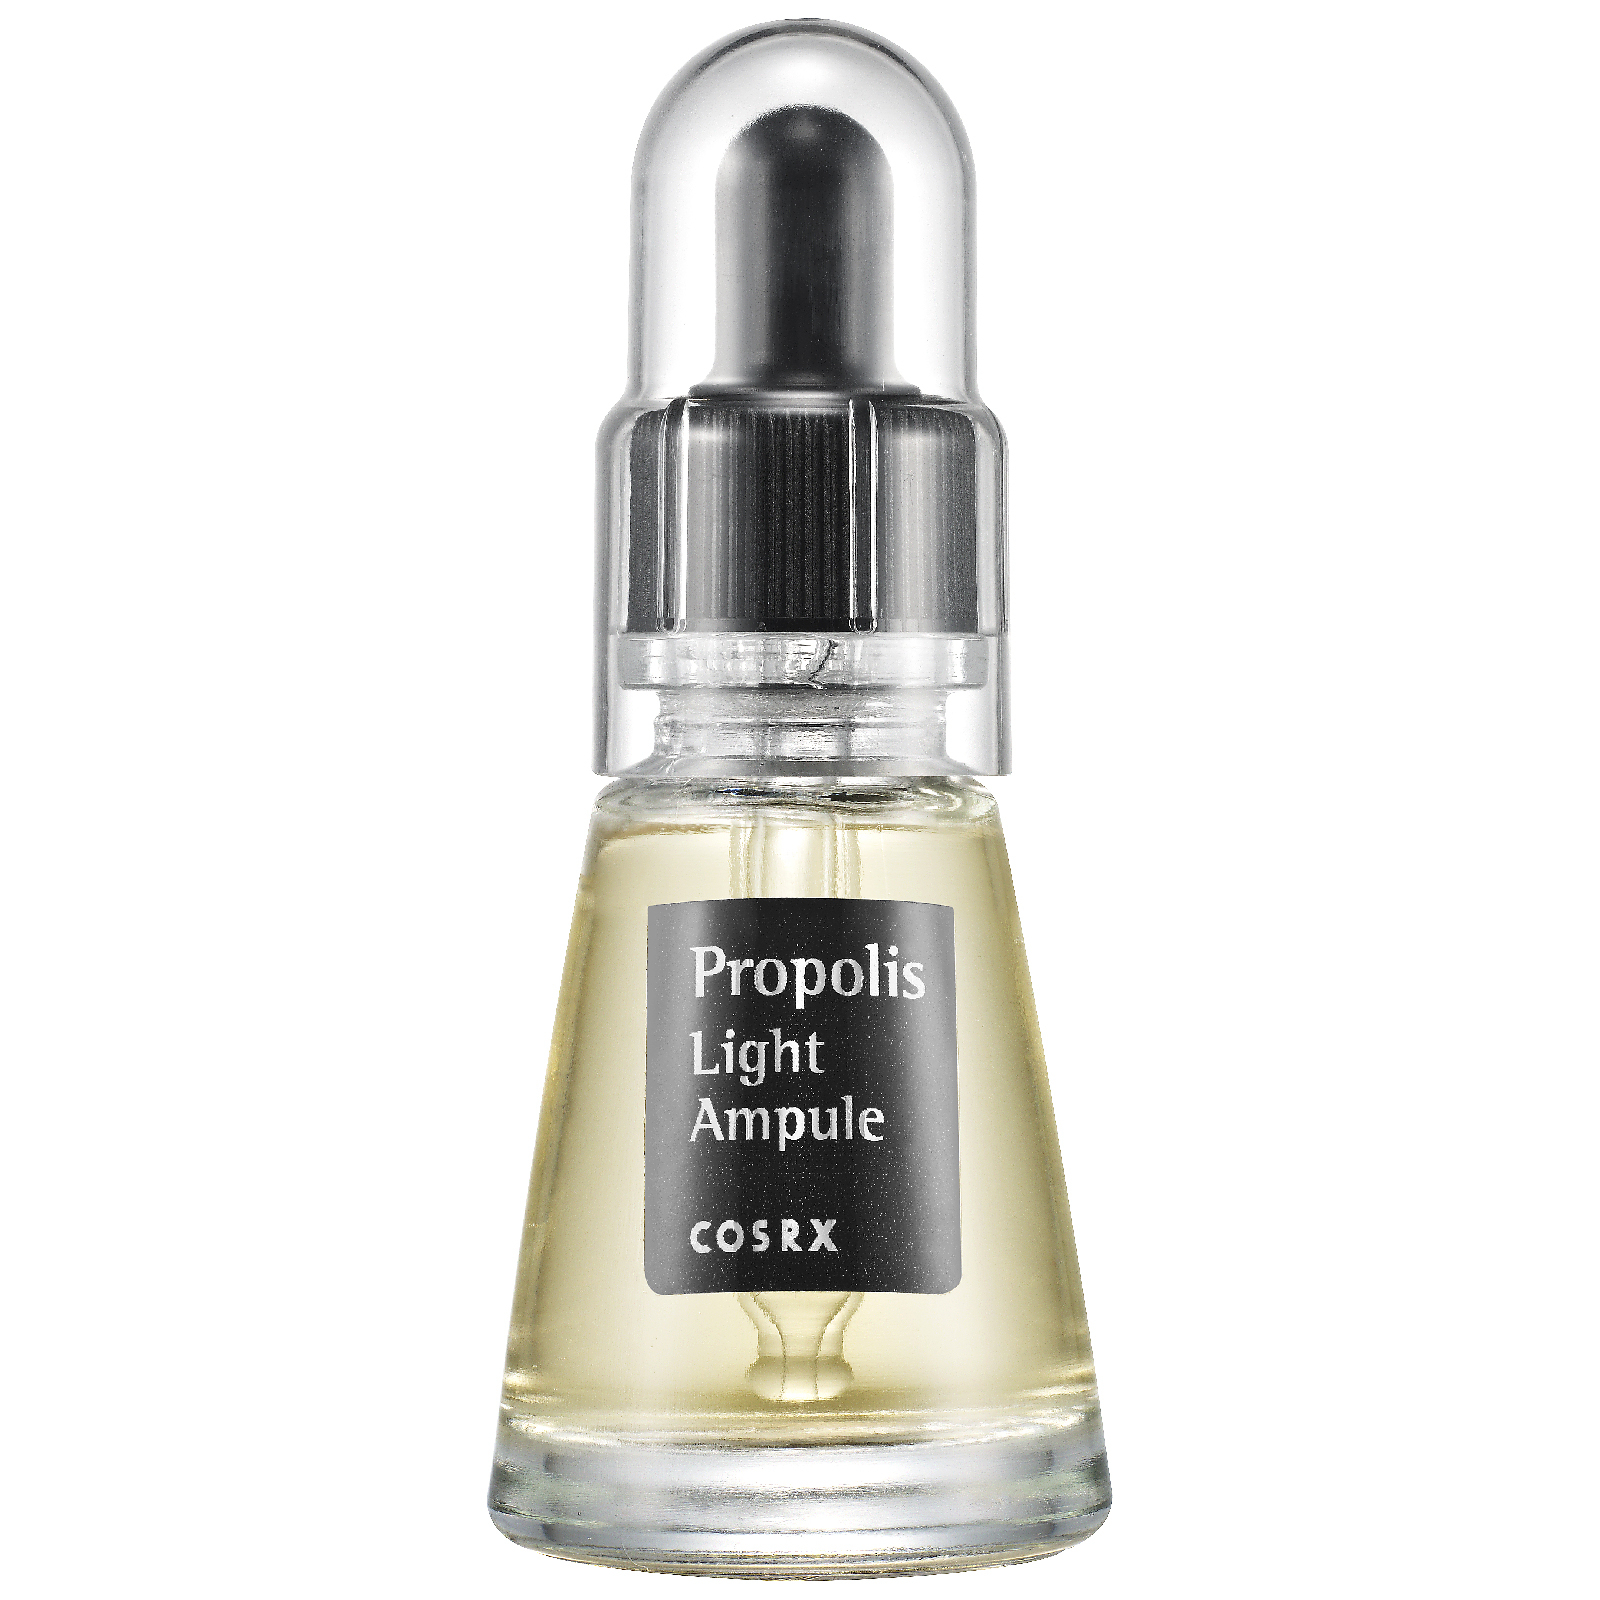 Sérum Propolis Light Ampule de COSRX 20 ml